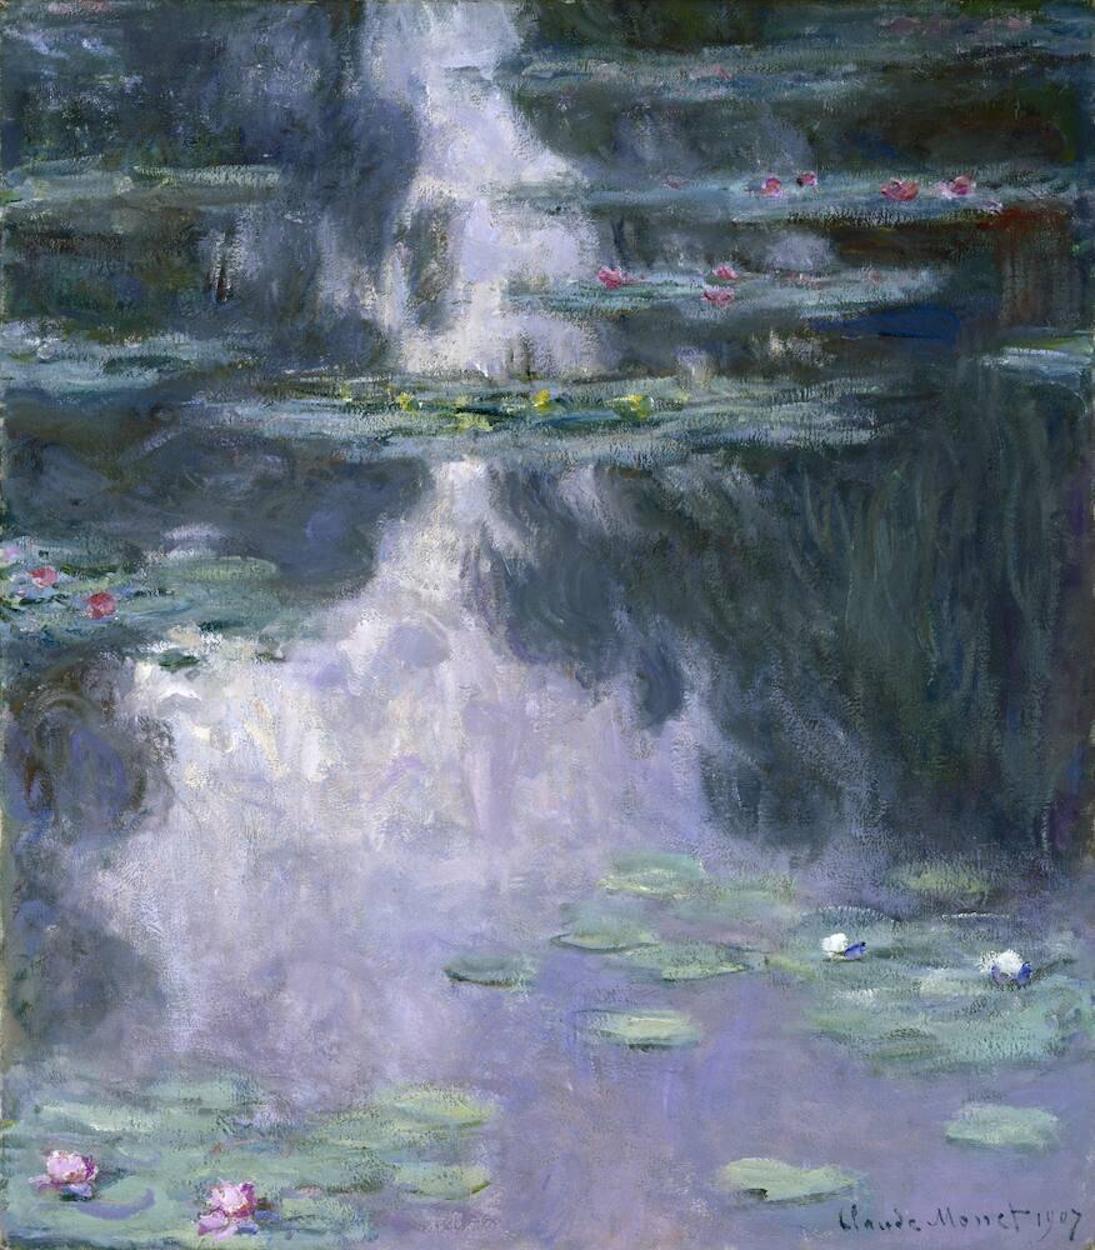 睡蓮 by Claude Monet - 1907 年 - 92.1 × 81.2 釐米 